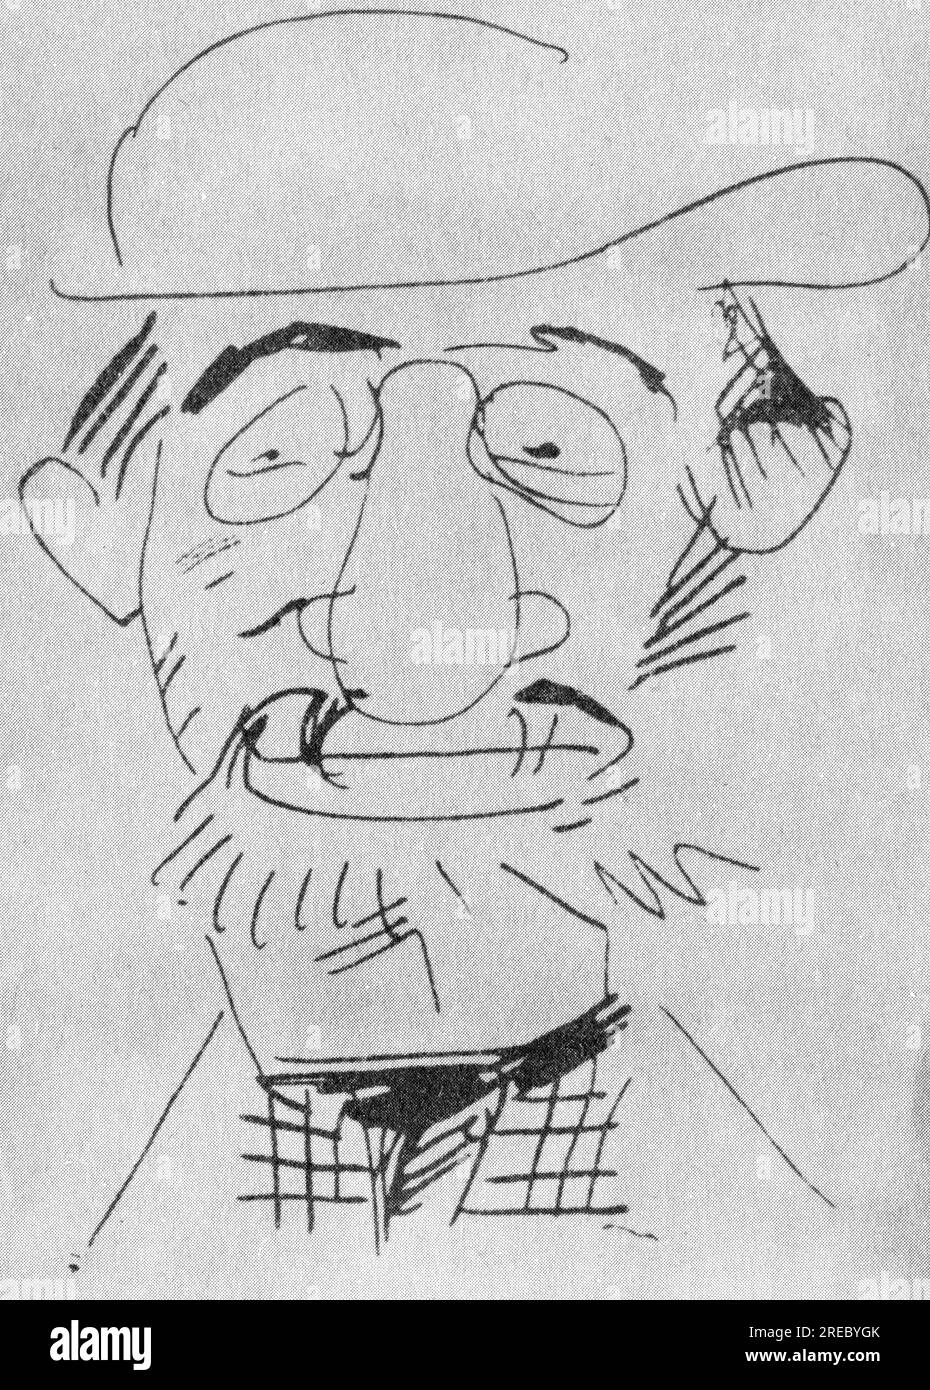 Toulouse-Lautrec, Henri de, 24.11.1864 - 9,9.1901, peintre et graphiste français, autoportrait, scetch, ARTISTE LE DROIT D'AUTEUR N'EST PAS À EFFACER Banque D'Images